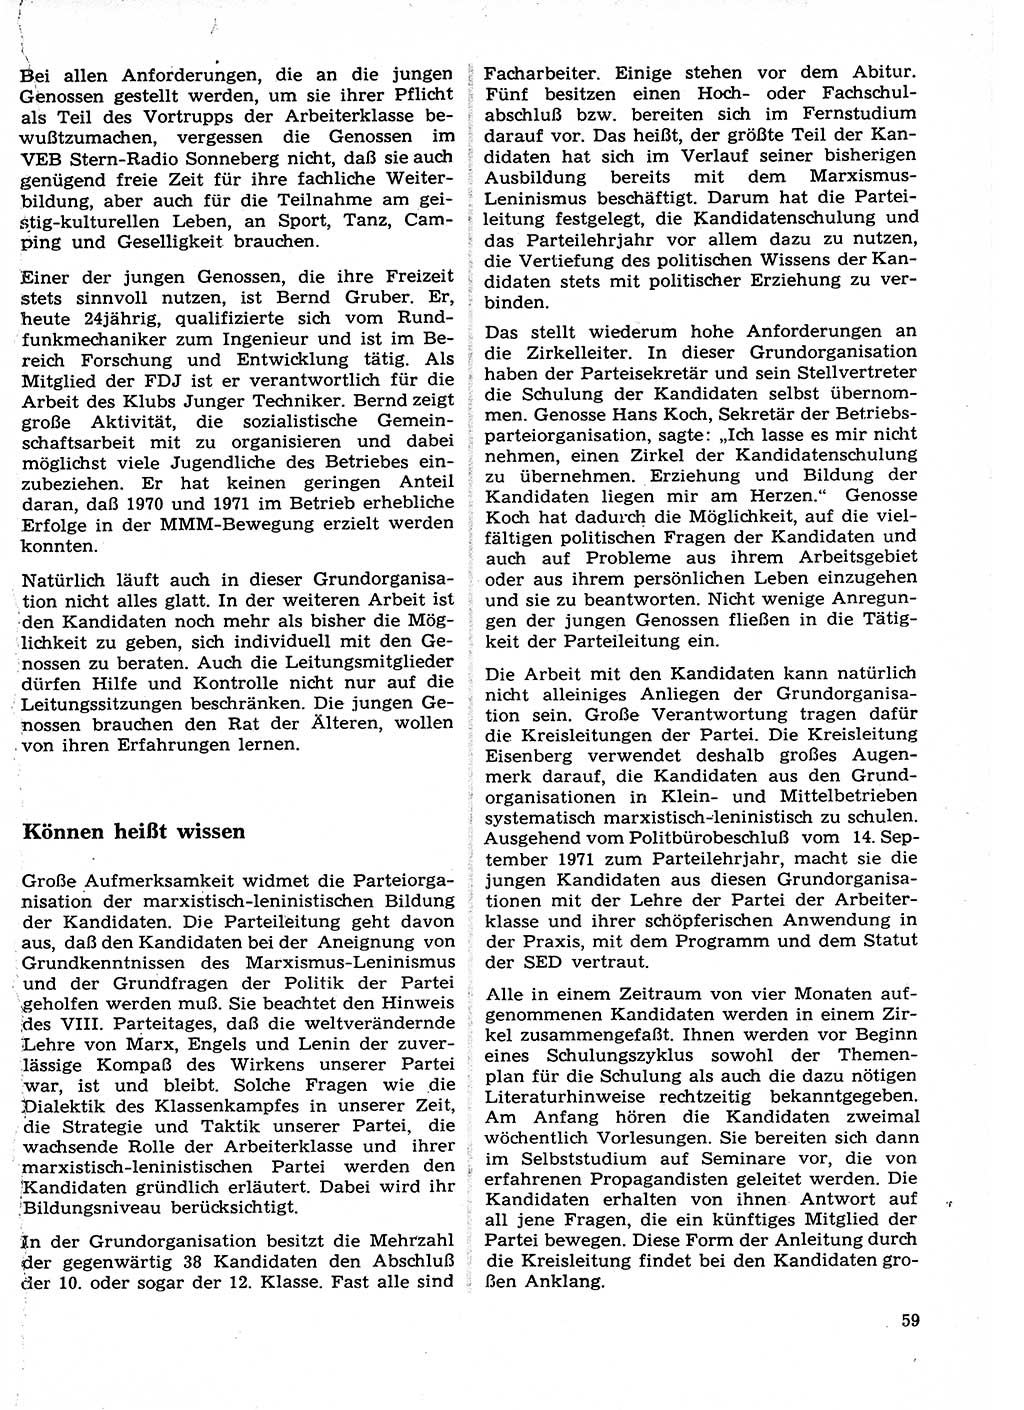 Neuer Weg (NW), Organ des Zentralkomitees (ZK) der SED (Sozialistische Einheitspartei Deutschlands) für Fragen des Parteilebens, 27. Jahrgang [Deutsche Demokratische Republik (DDR)] 1972, Seite 59 (NW ZK SED DDR 1972, S. 59)